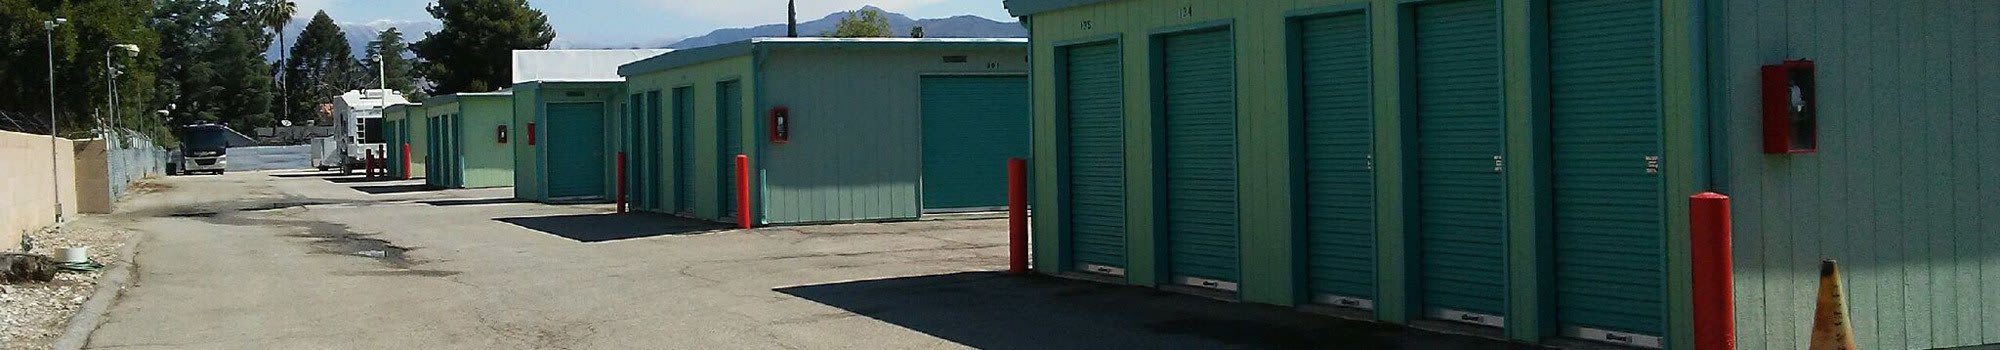 Reviews of Handi Storage in Calimesa, California